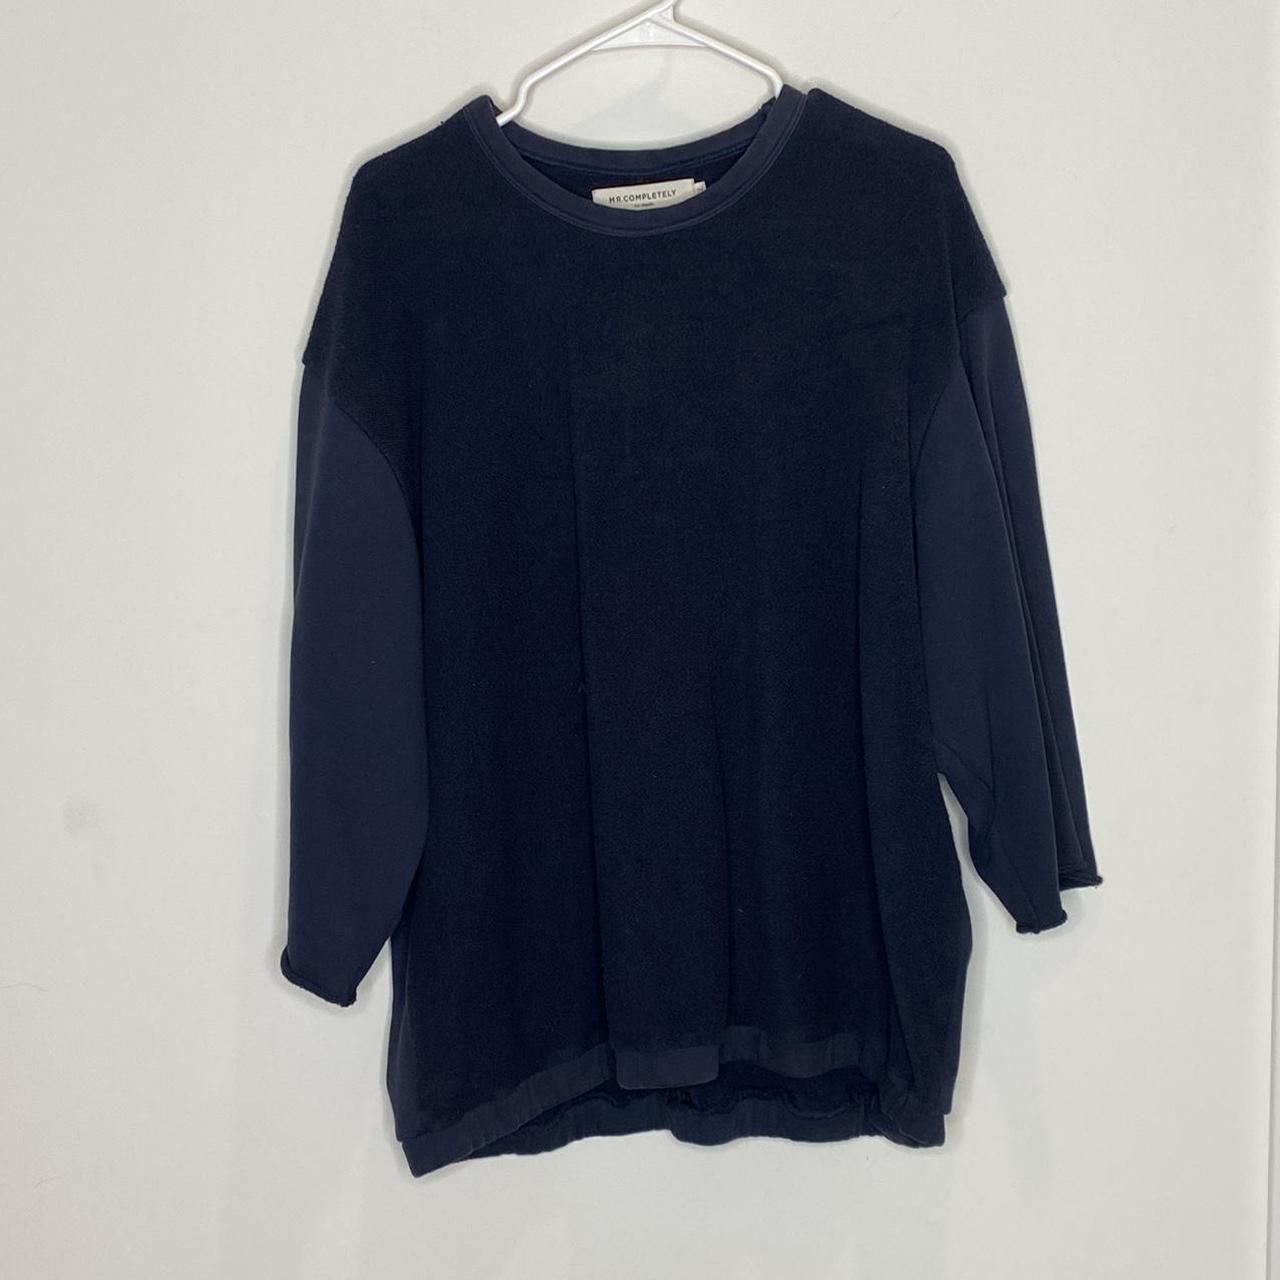 Product Image 1 - #mrcompletely #sweatshirt